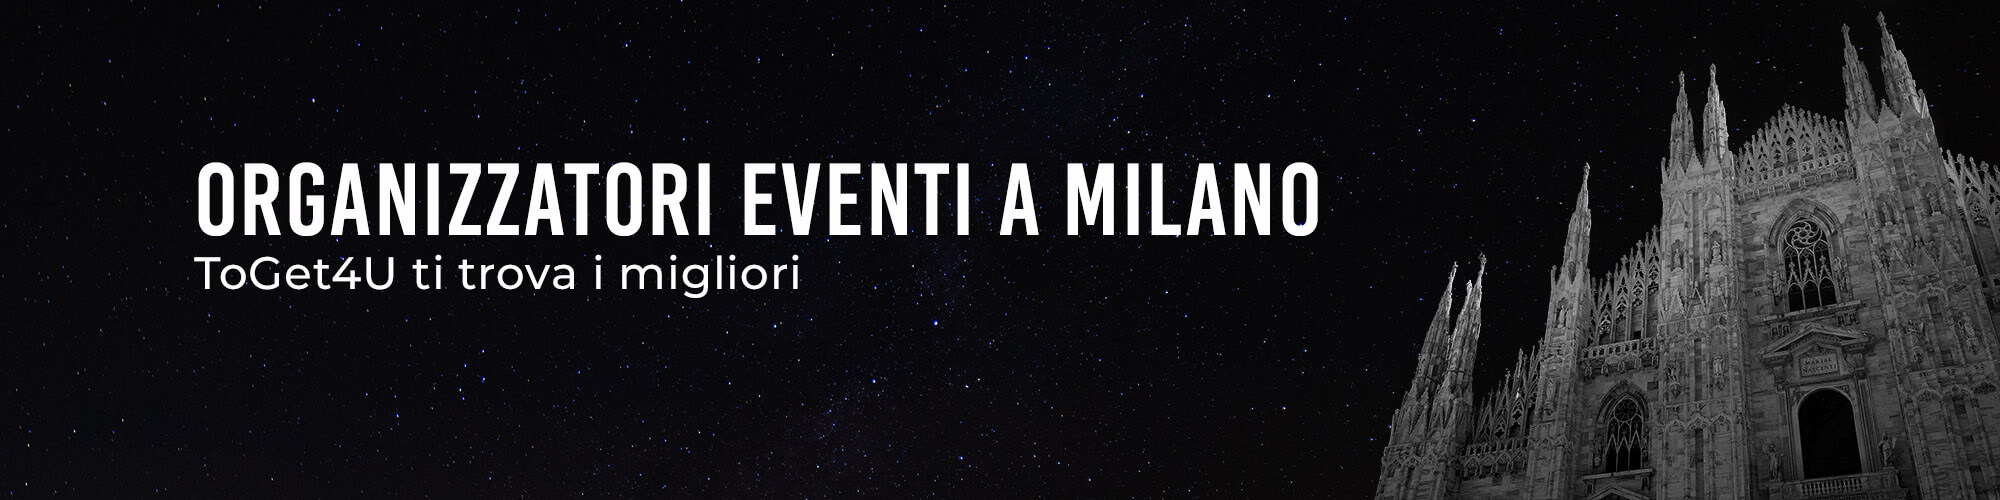 Organizzazione eventi Milano